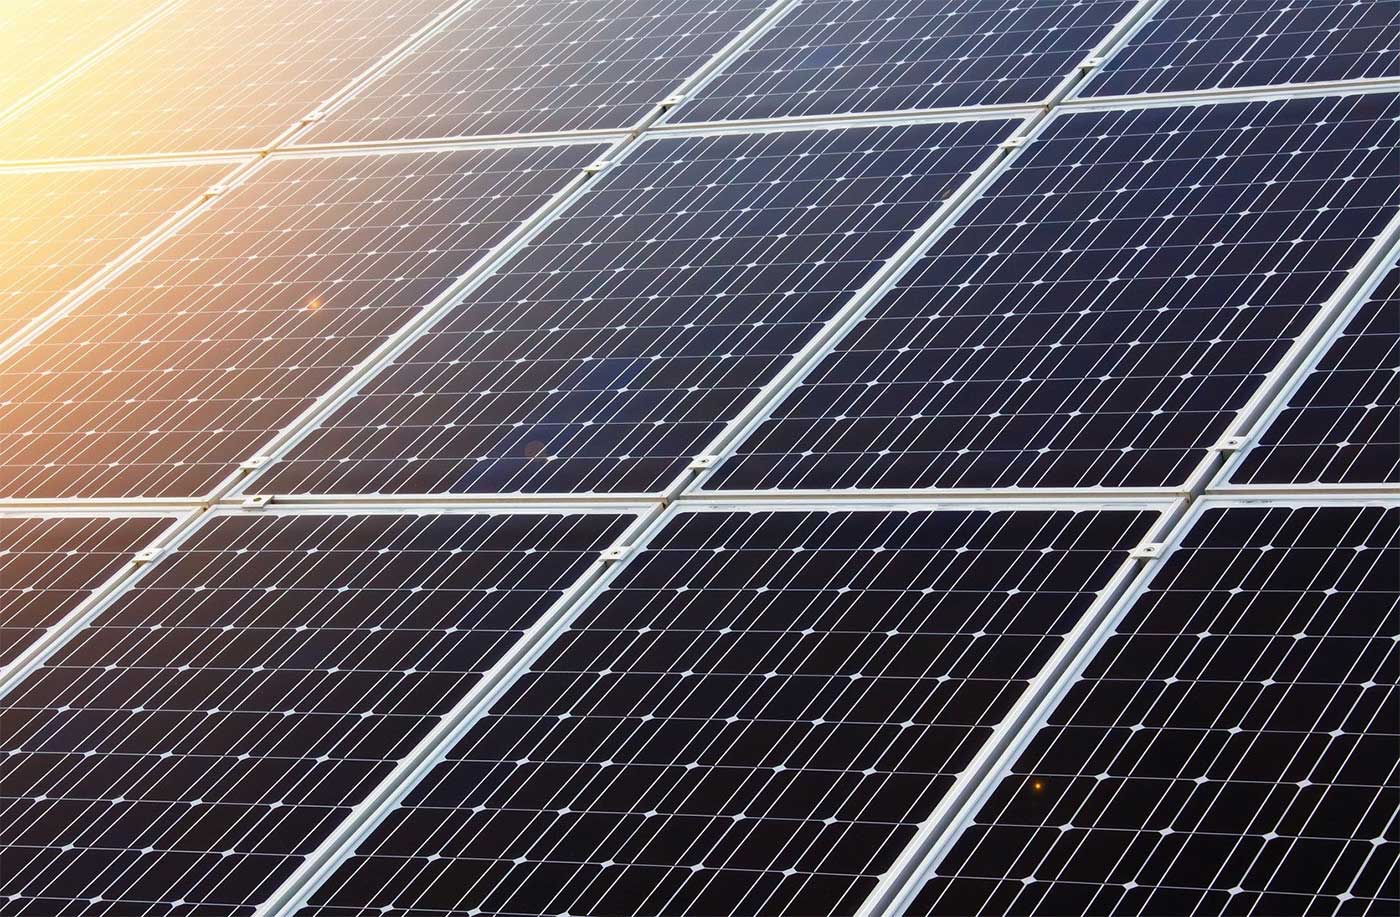 Ces panneaux solaires pourraient révolutionner la production d'hydrogène